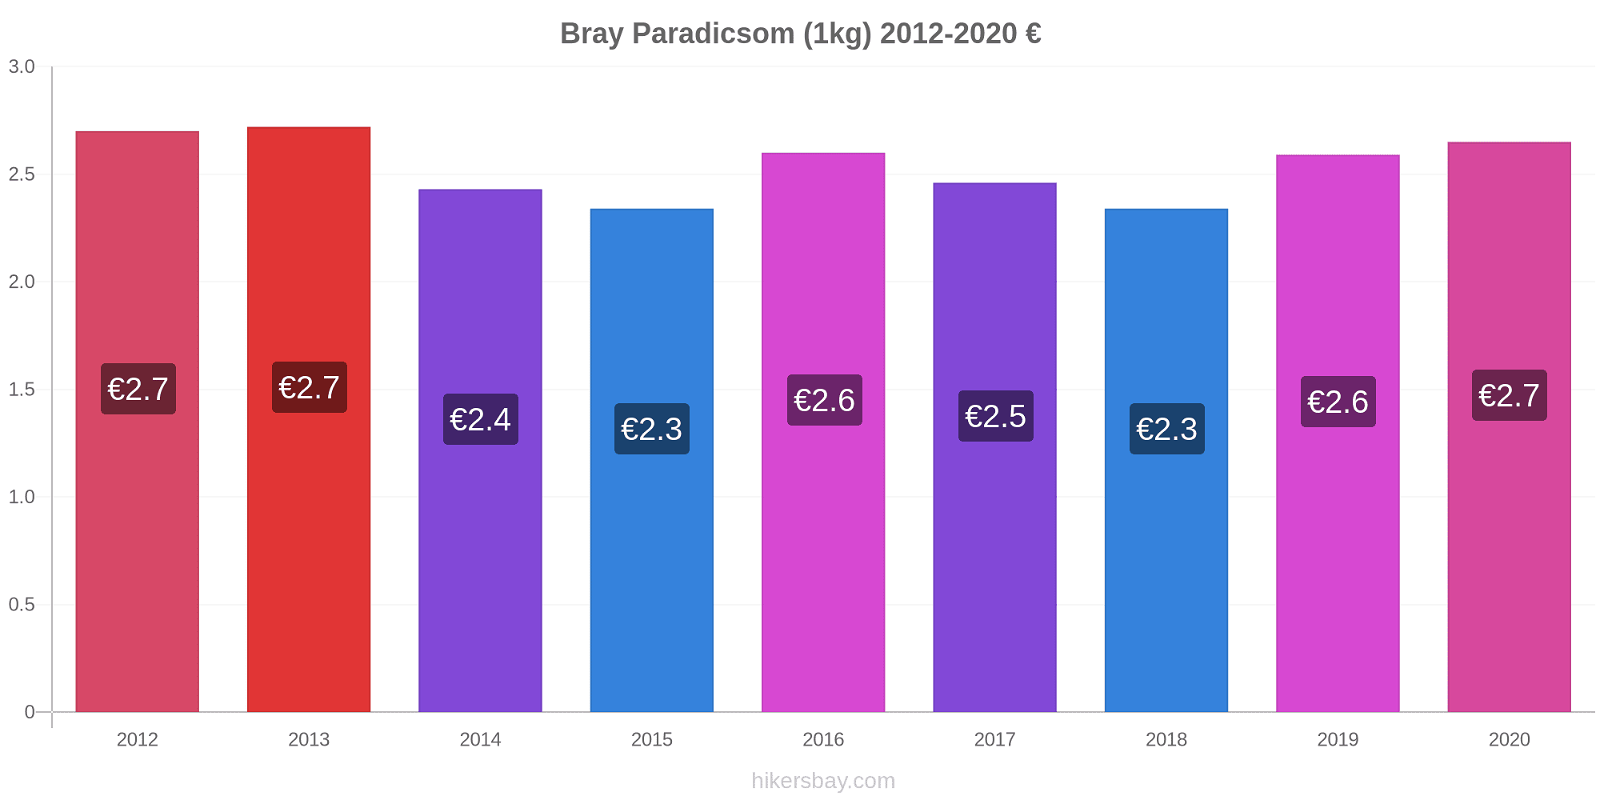 Bray árváltozások Paradicsom (1kg) hikersbay.com